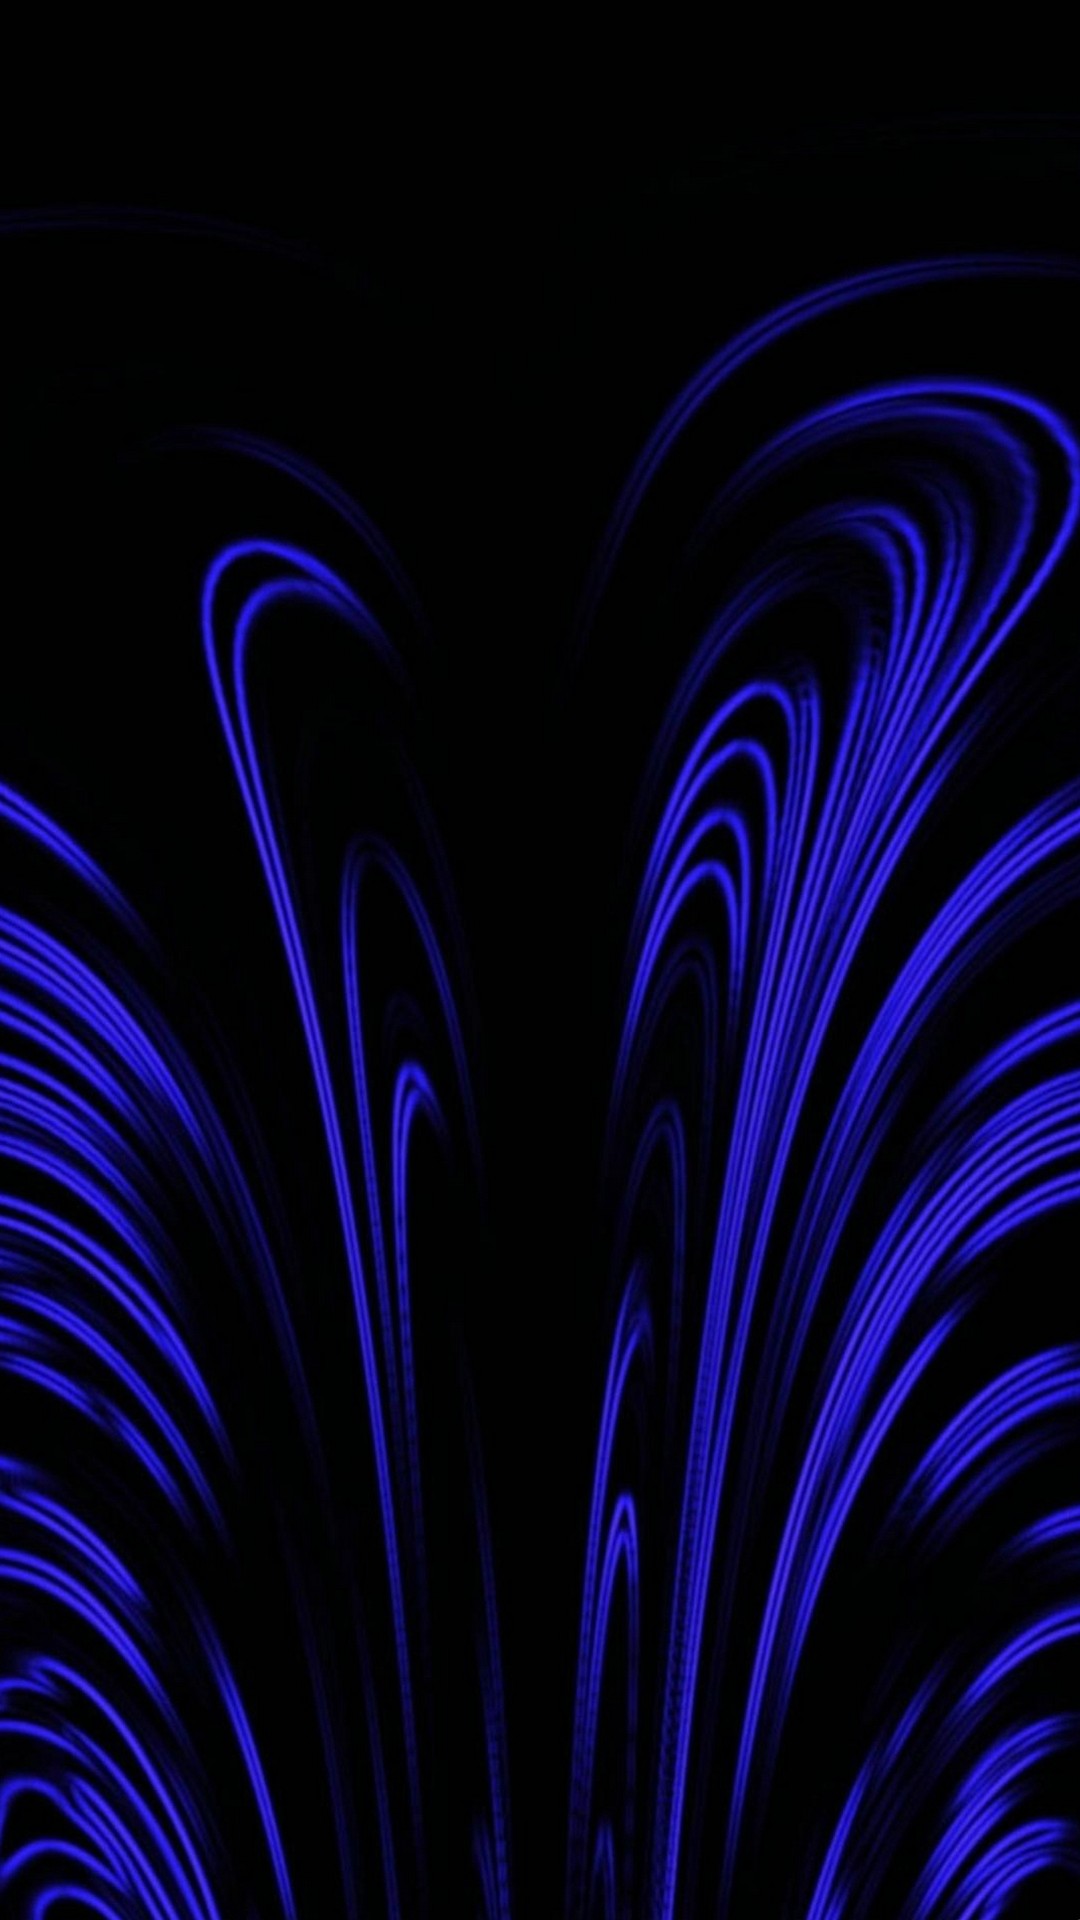 fond d'écran abstrait pour android,bleu,noir,violet,bleu électrique,lumière